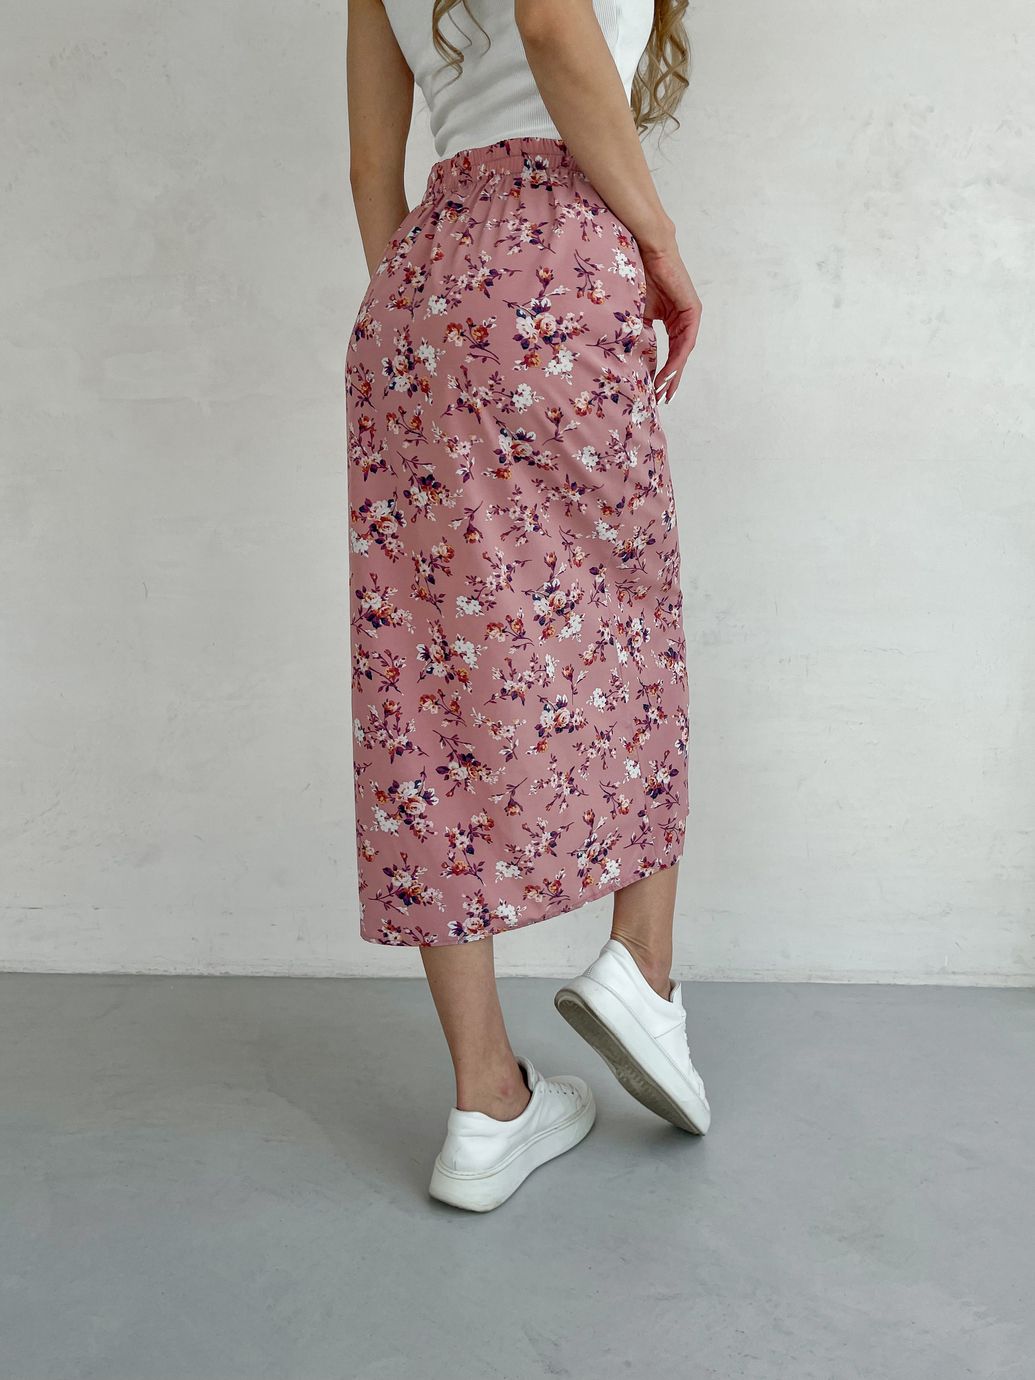 Купить Длинная женская юбка ниже колена с размером в цветочек Merlini Парма 400000103, размер 42-44 (S-M) в интернет-магазине